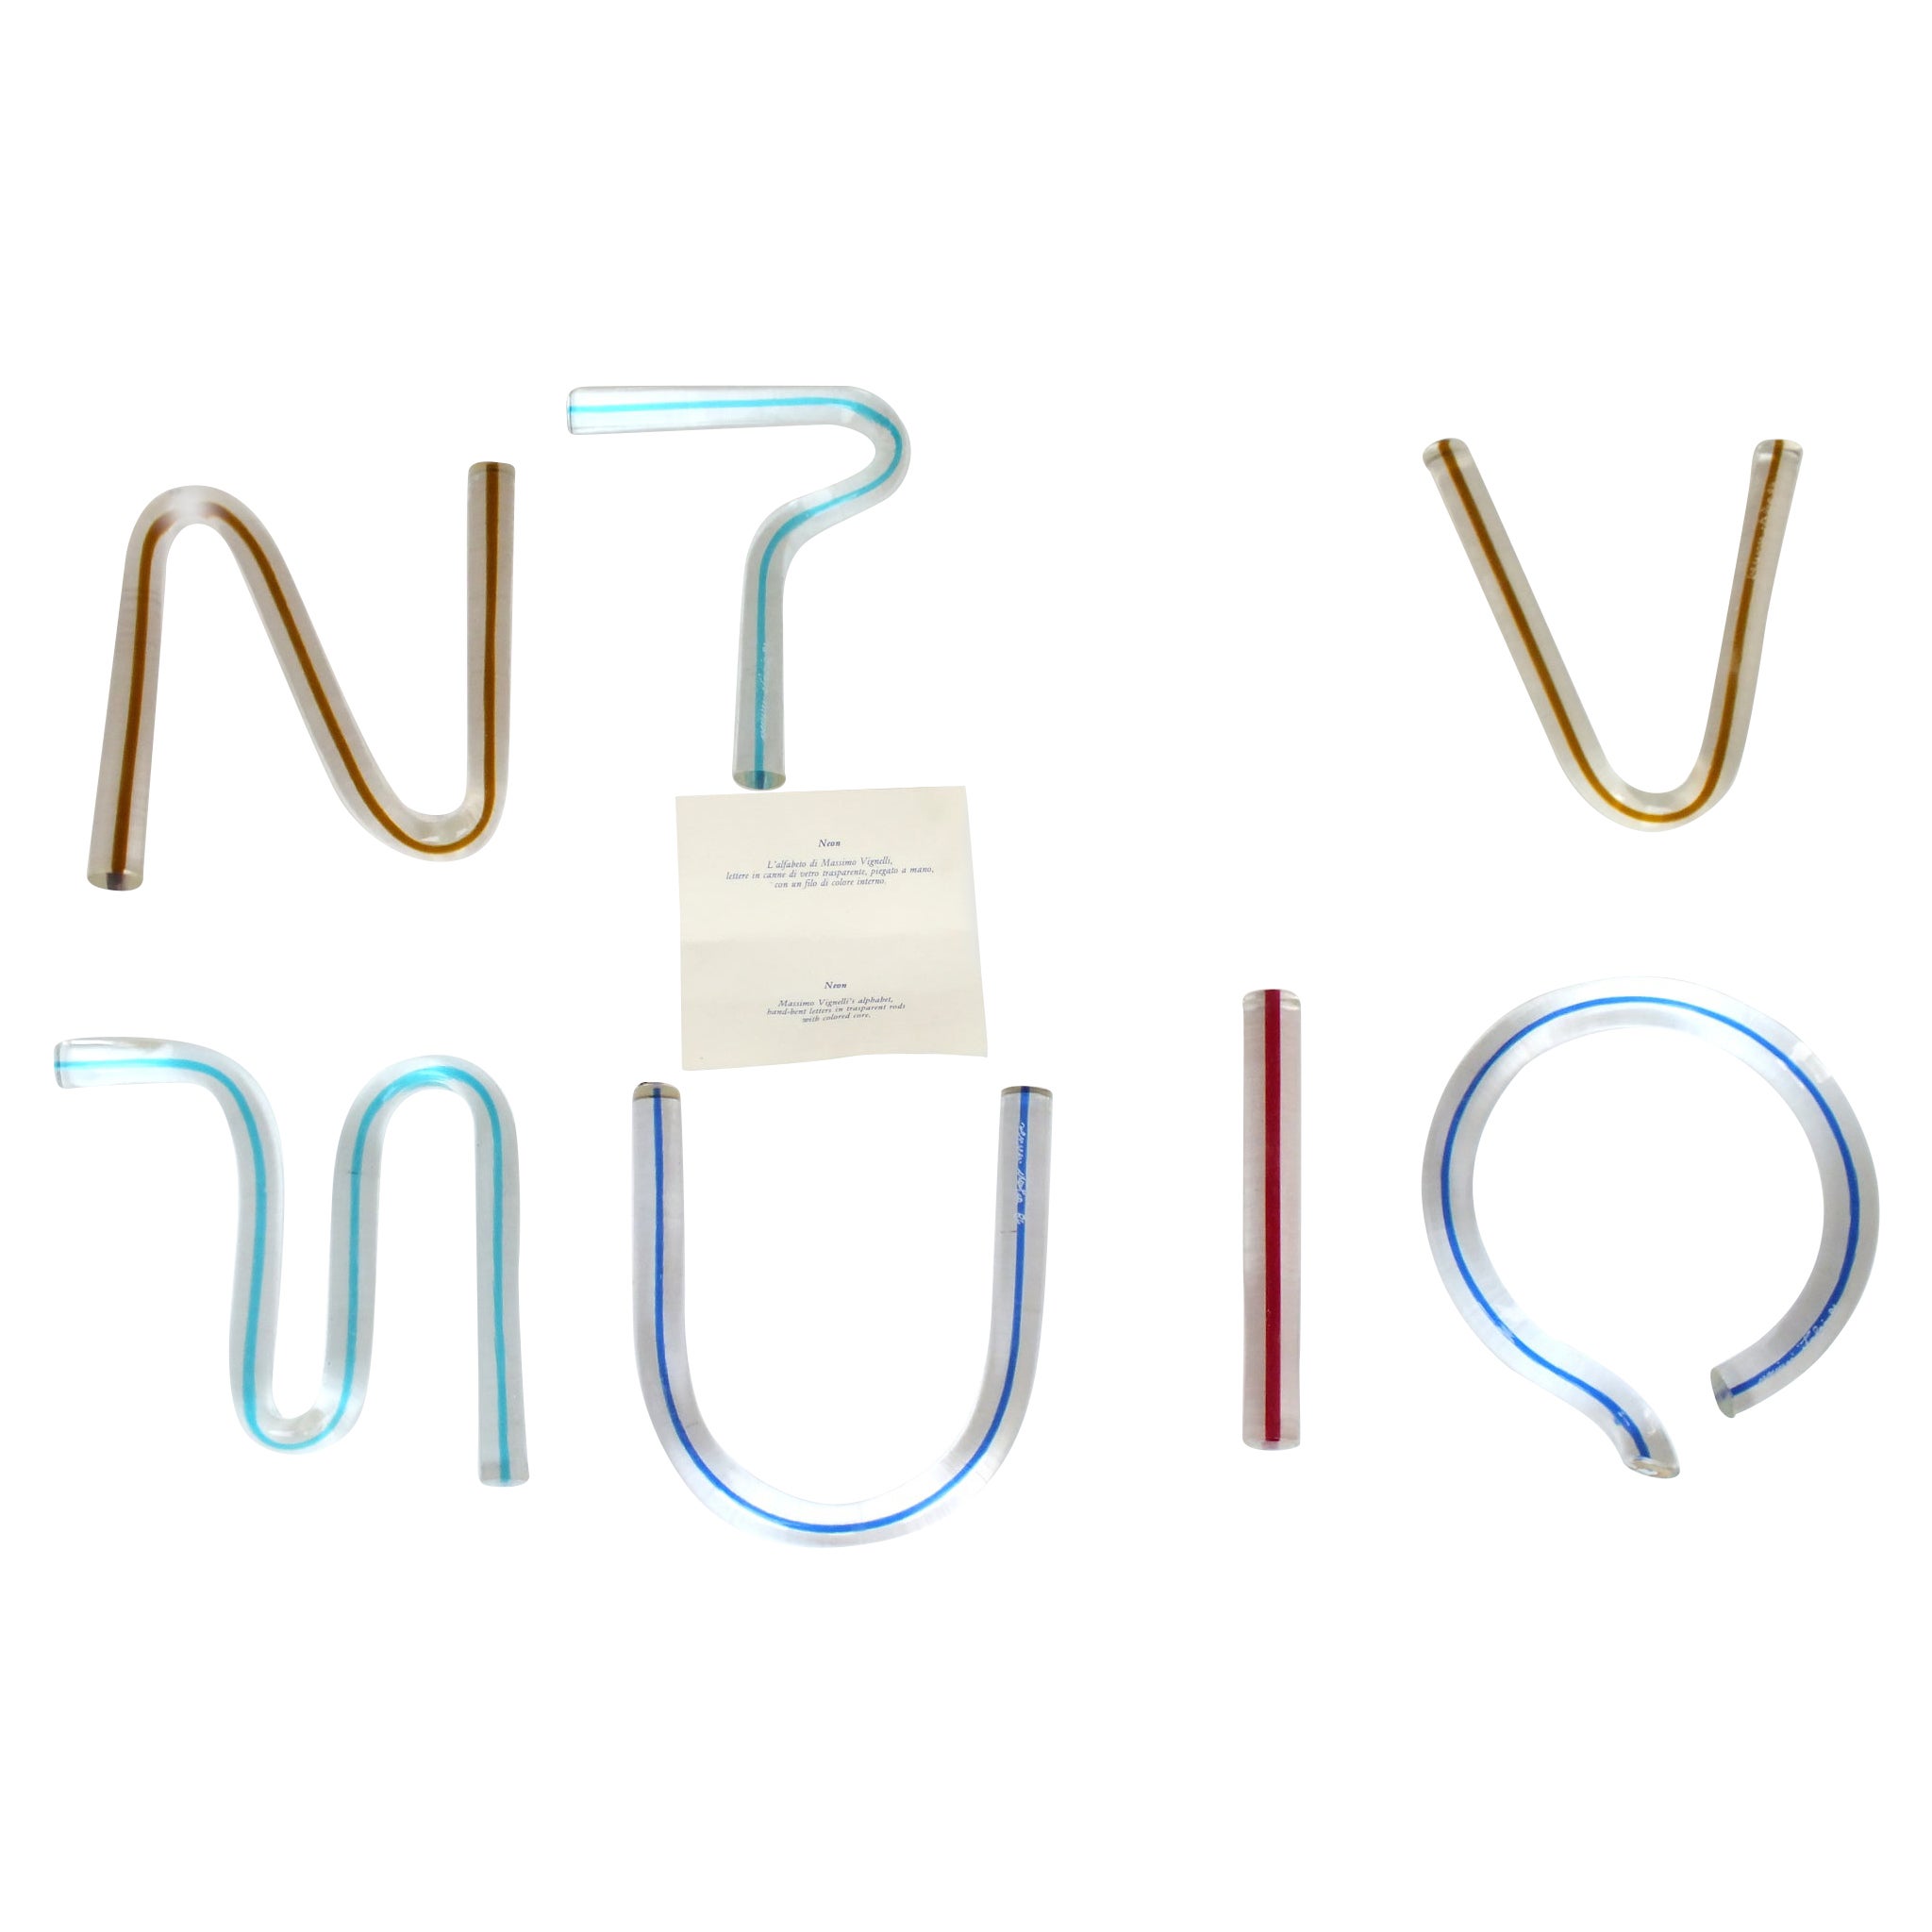 One Venini Alphabet Letters "Neon" Massimo Vignelli Design Years 1984 For Sale